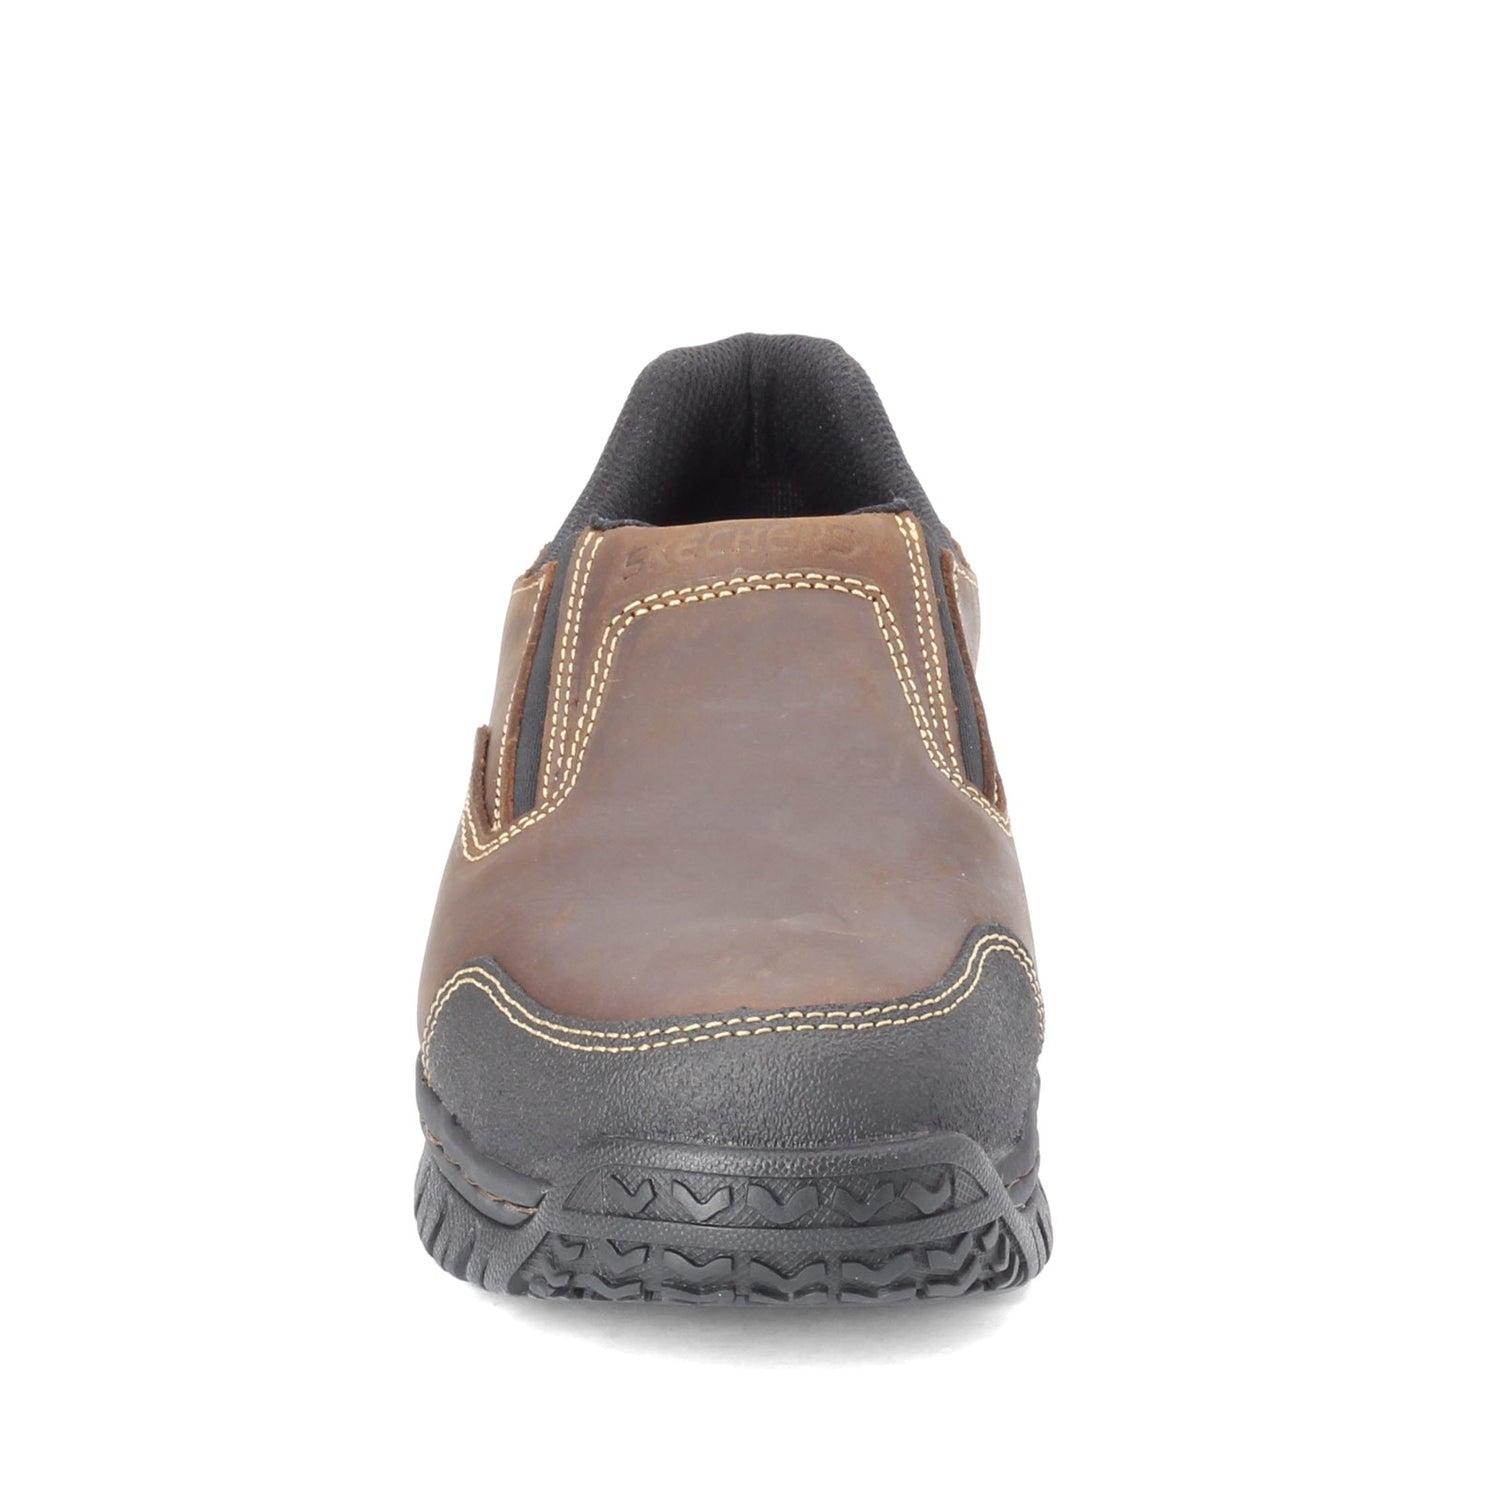 Peltz Shoes  Men's Skechers Relaxed Fit: Hartan ST Work Shoe - Wide Width DARK BROWN 77066W-DKBR